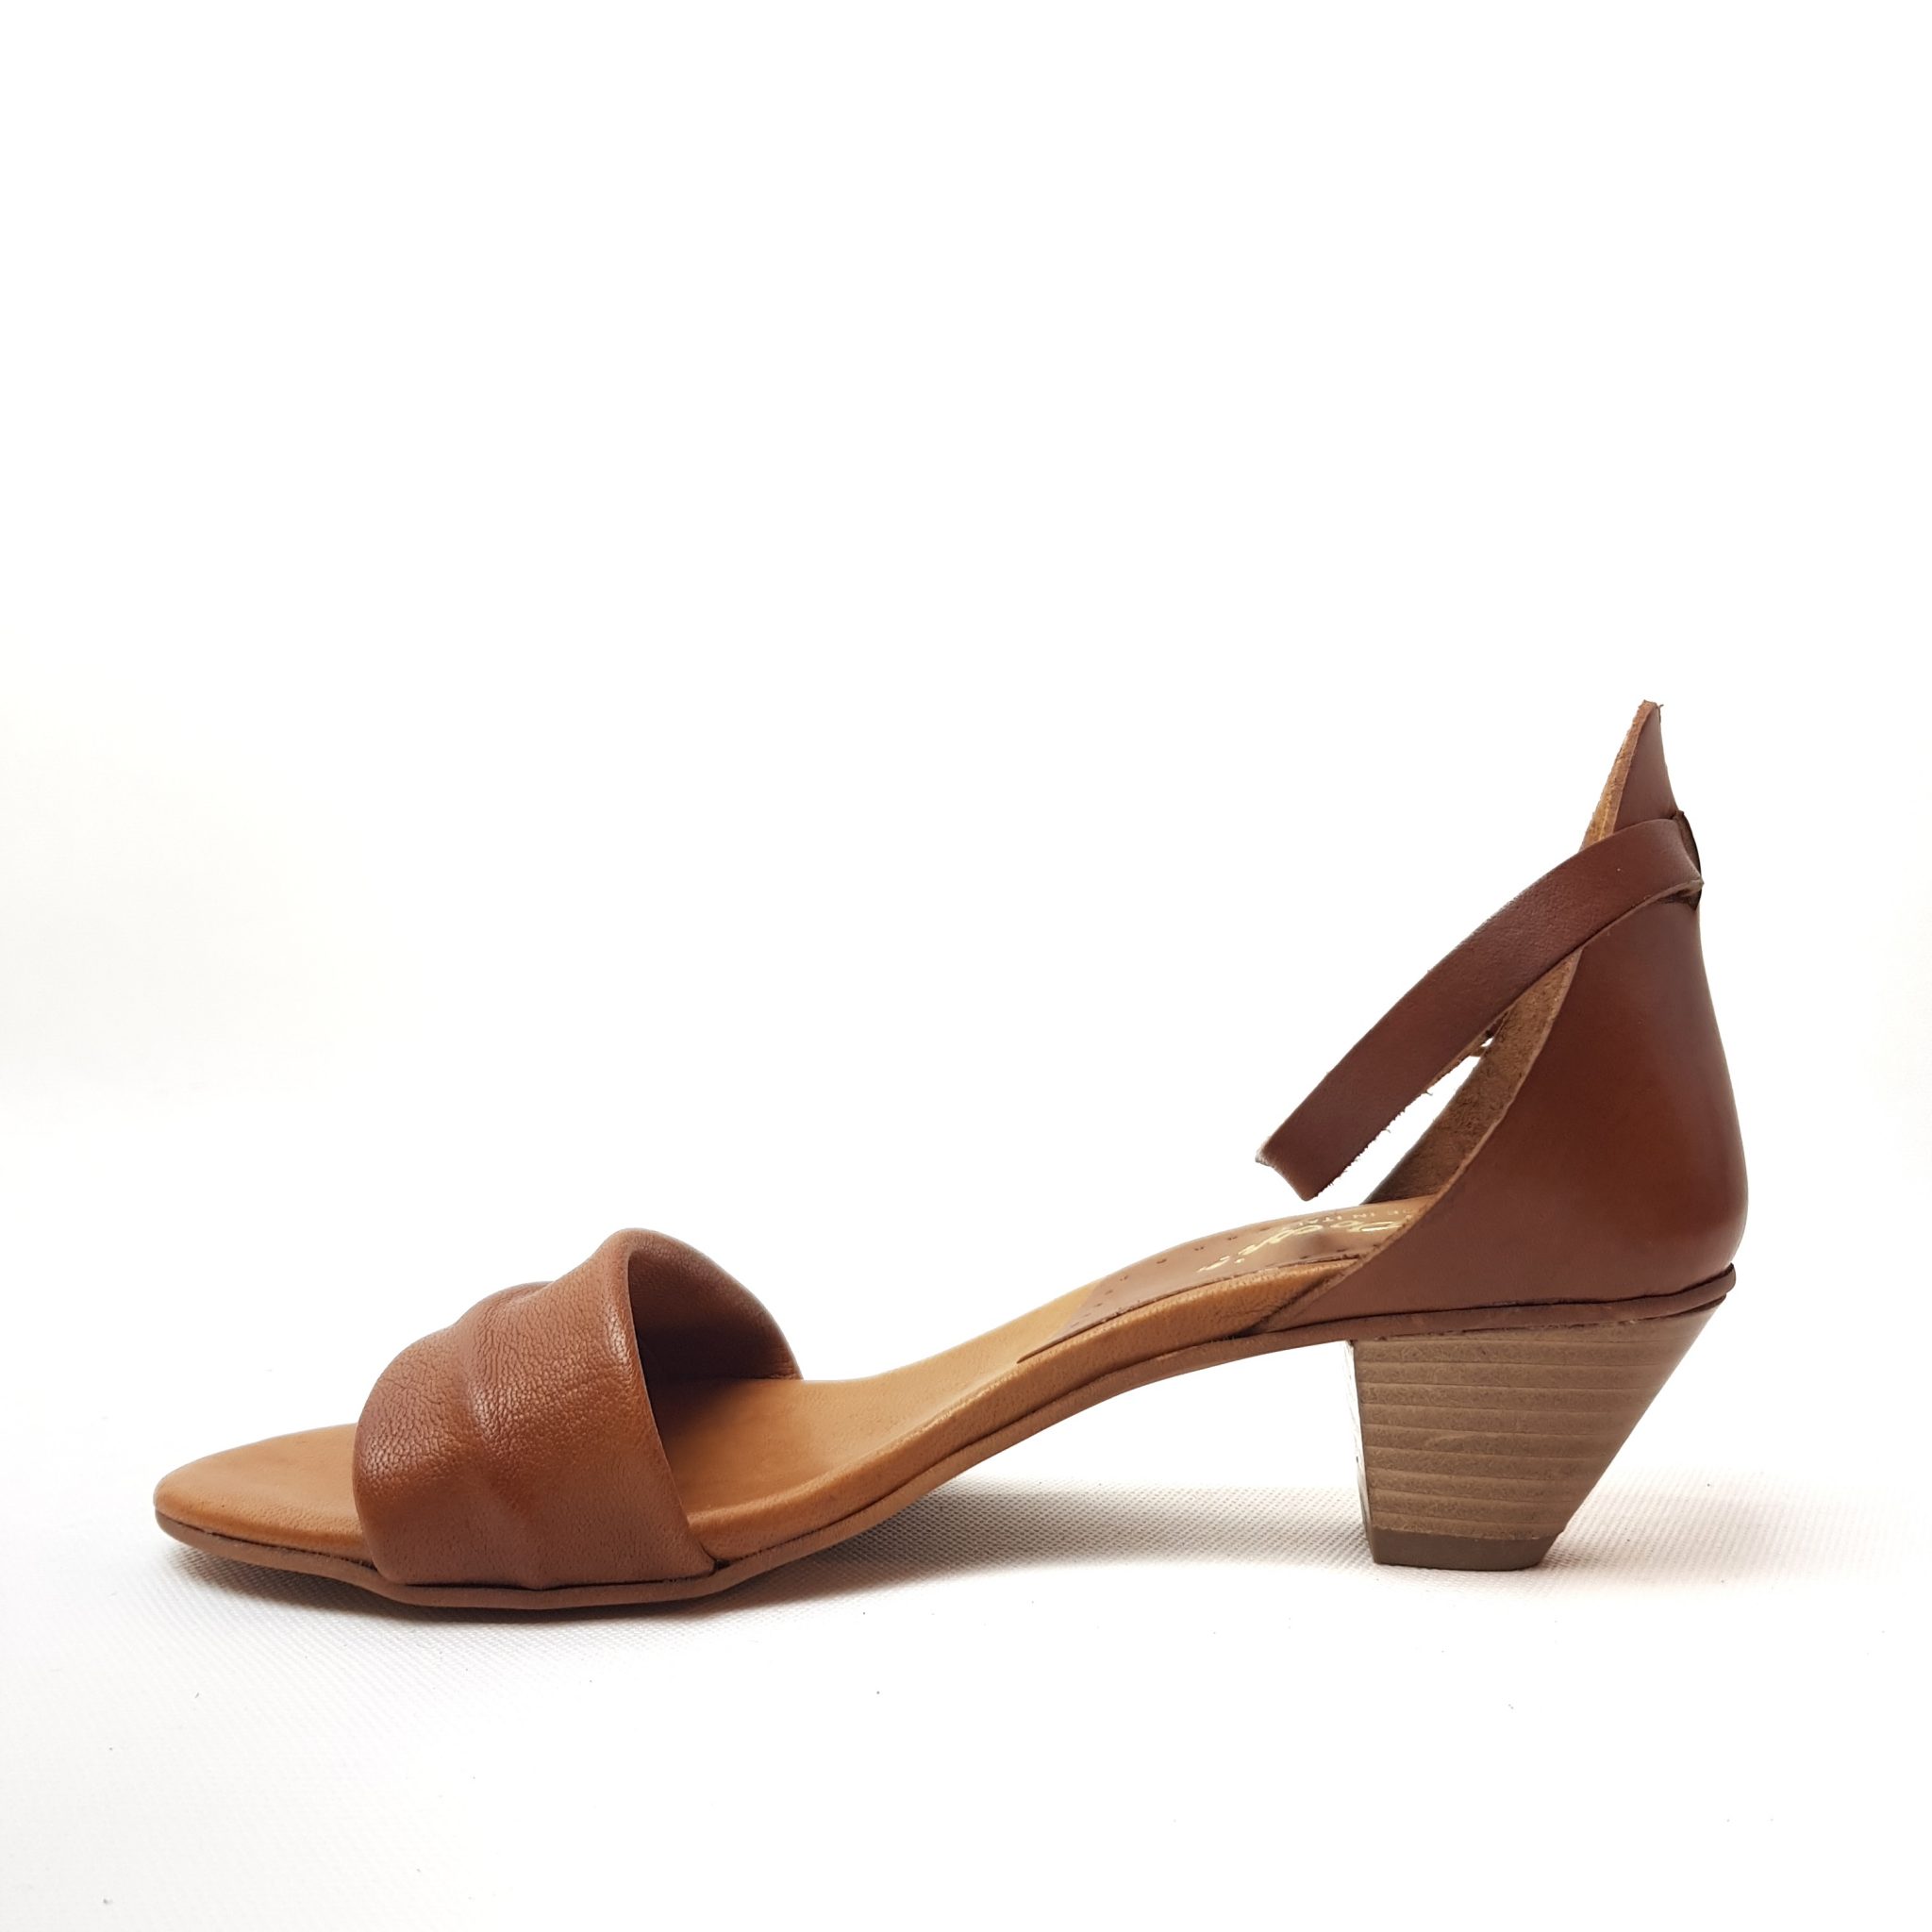 Scarpe Calzature donna Sandali Sandali per piedi nudi Scarpe sandalo con diamanti imbottiti in vera pelle trapuntata slide scarpe con tacco alto 